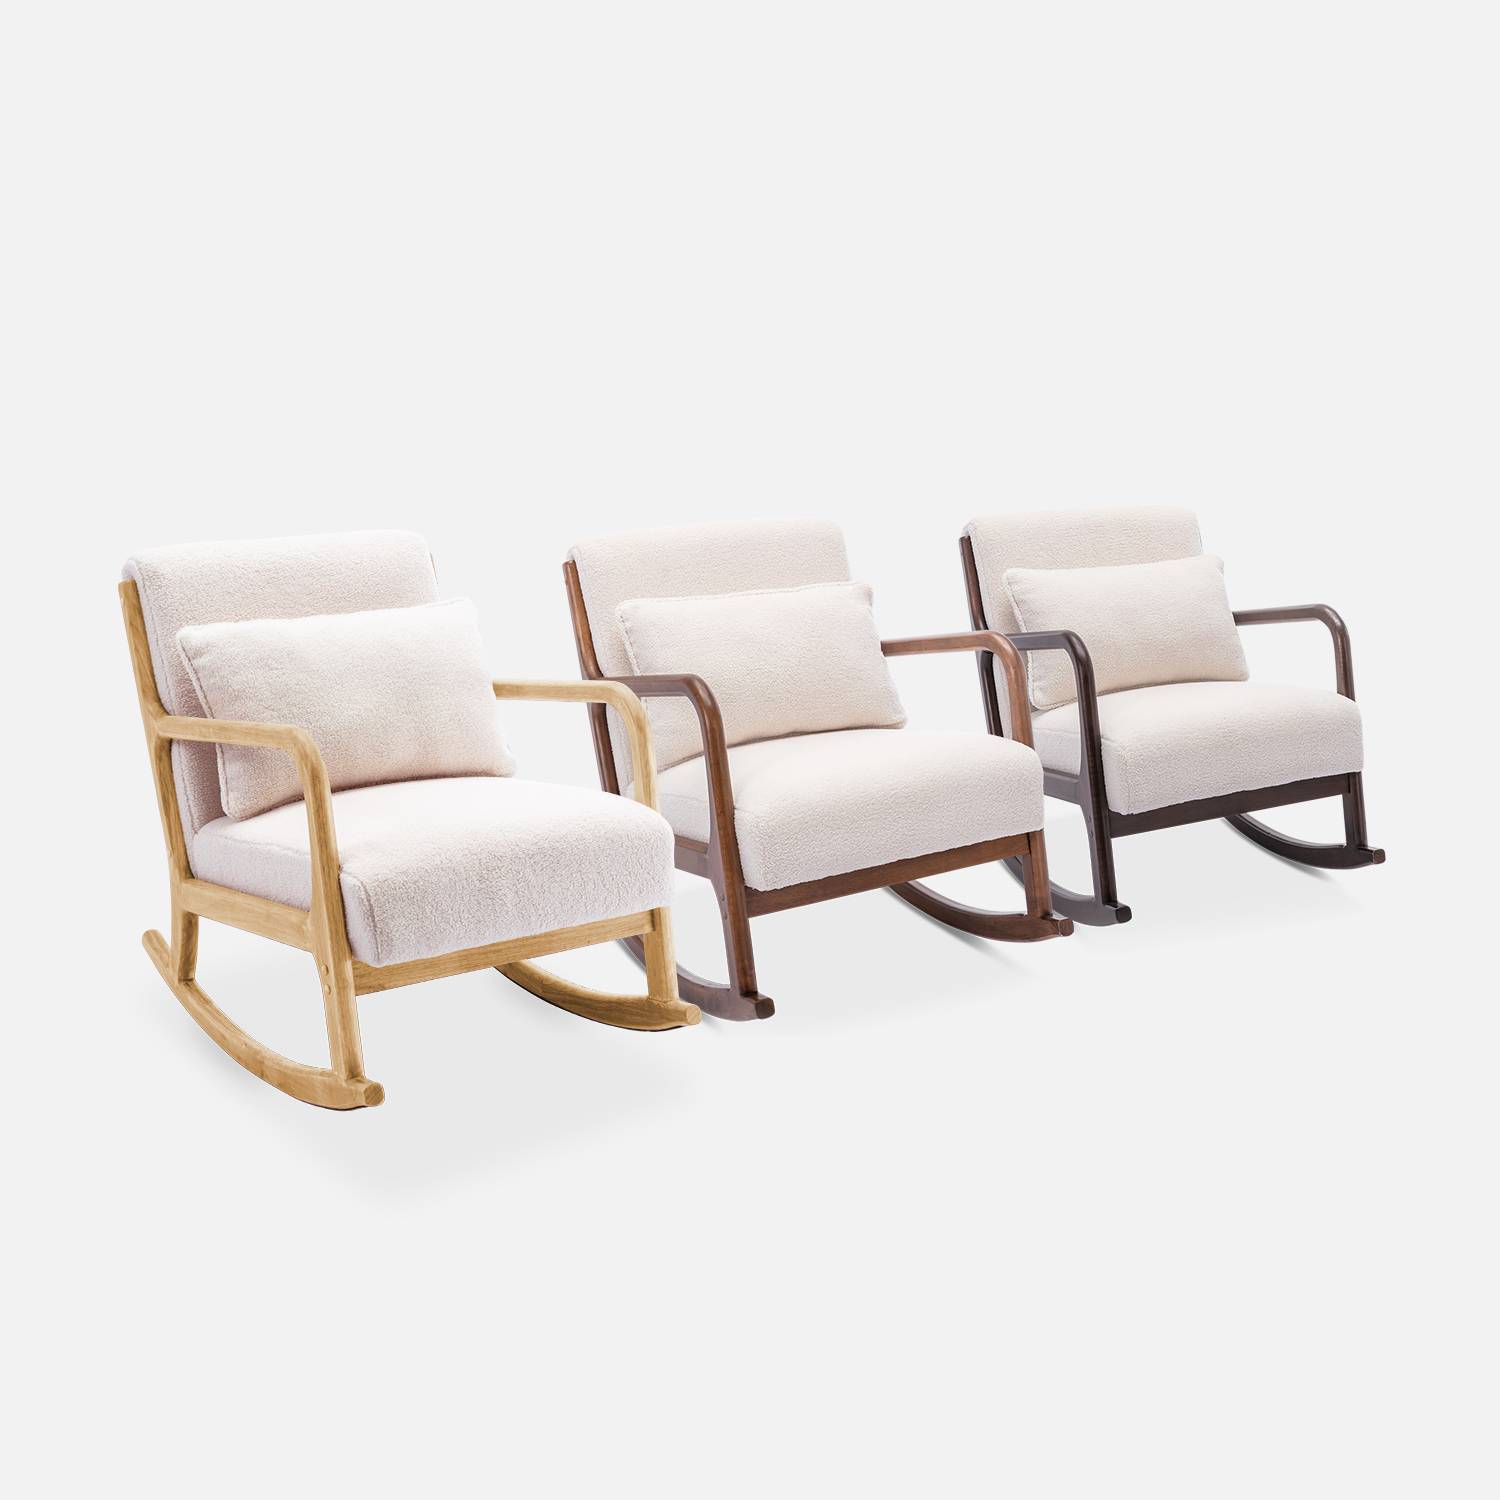 Cadeira de baloiço de design em madeira e tecido, caracóis brancos, 1 lugar, cadeira de baloiço escandinava Photo8